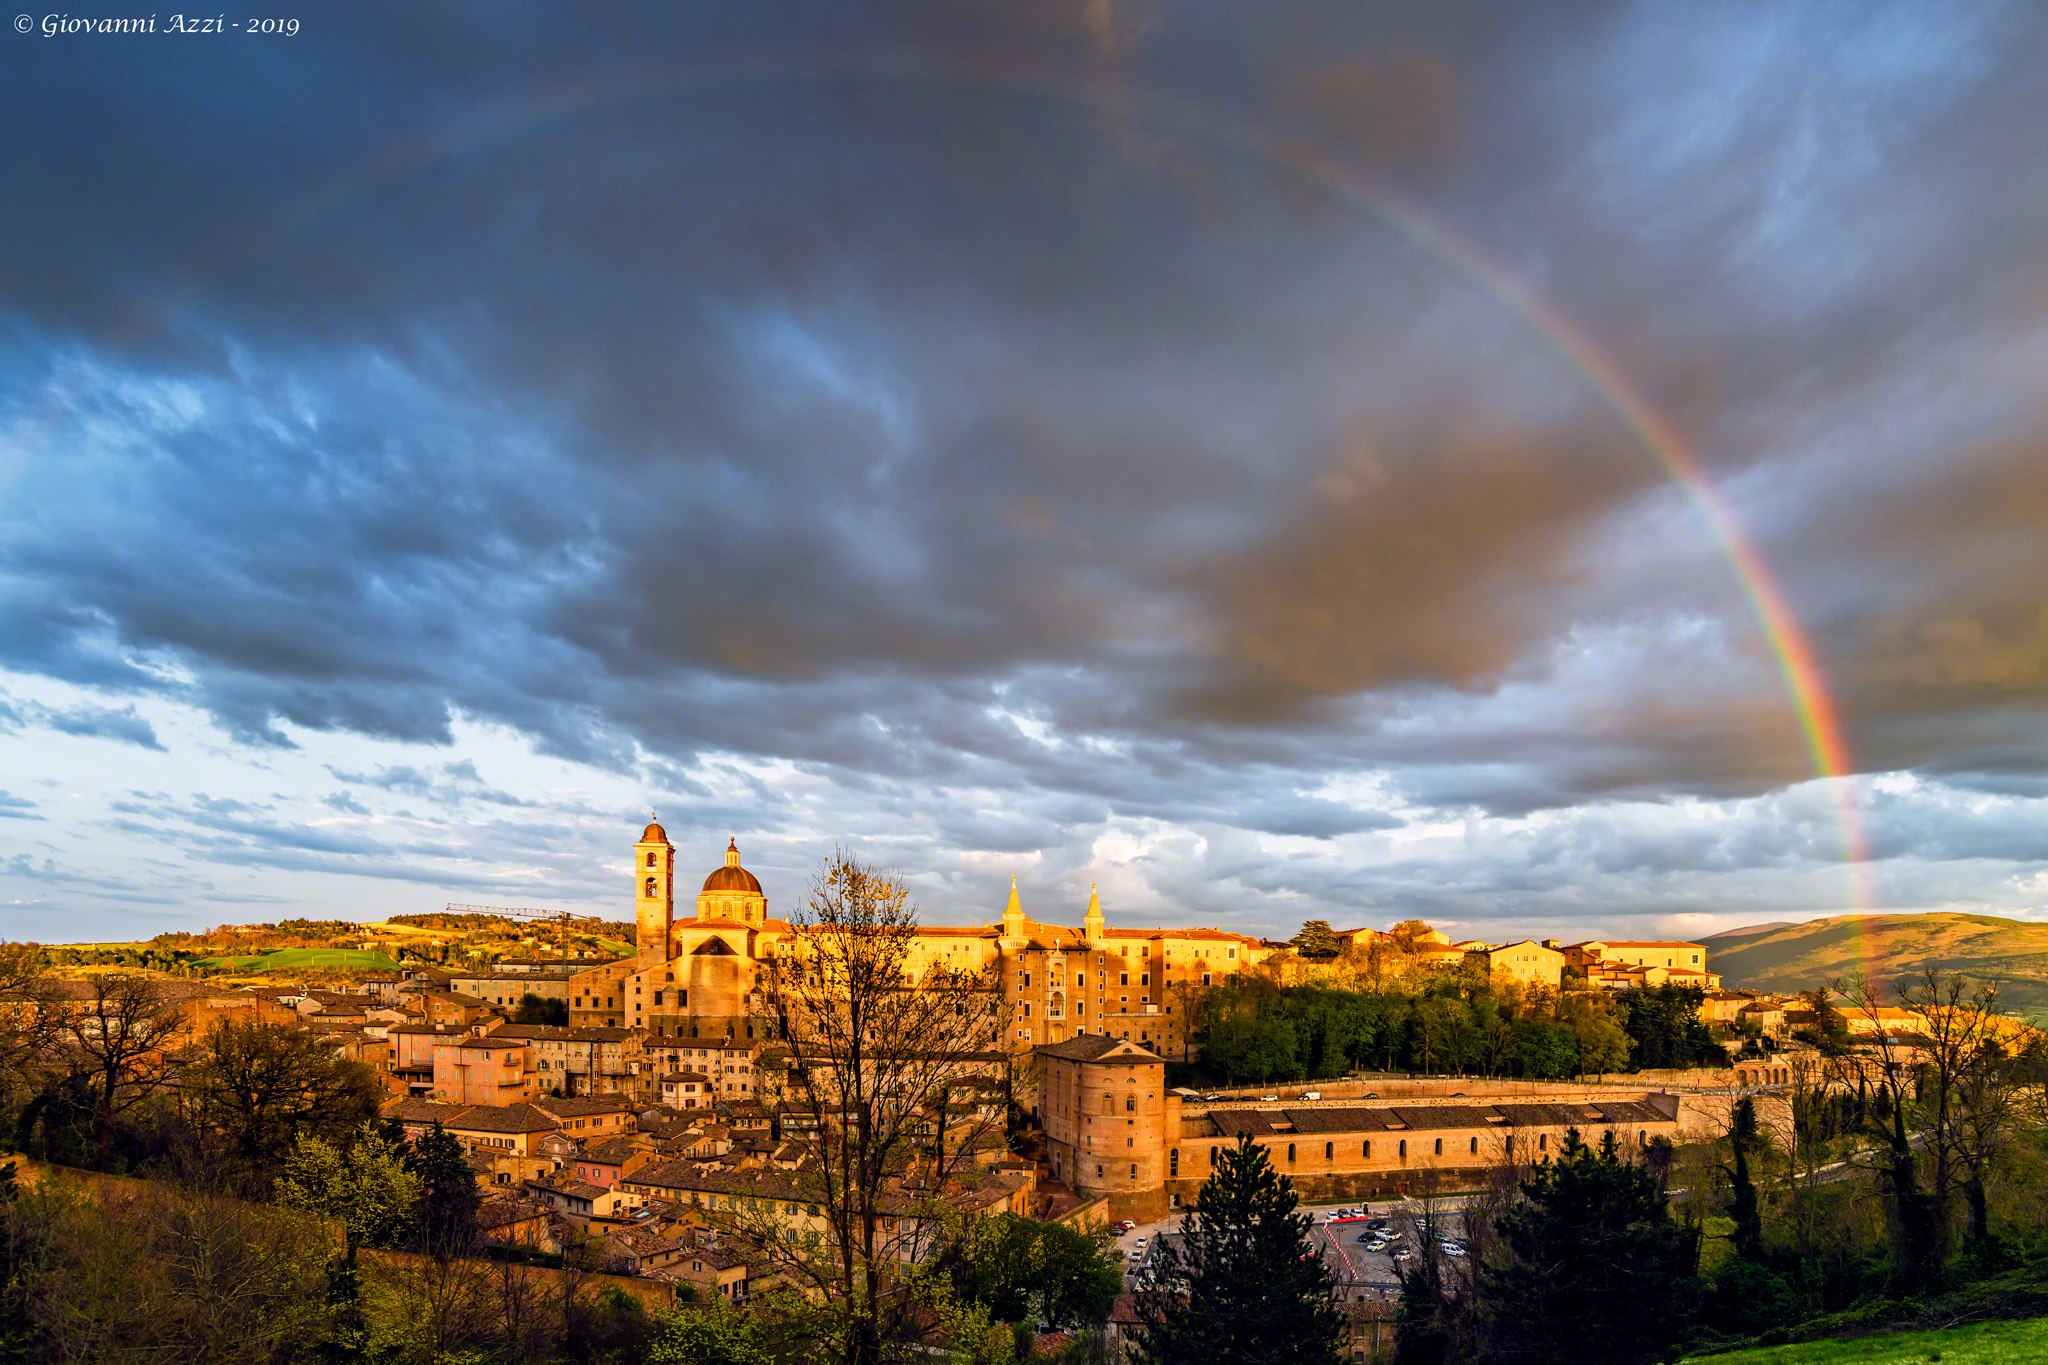 L'arcobaleno di Urbino...